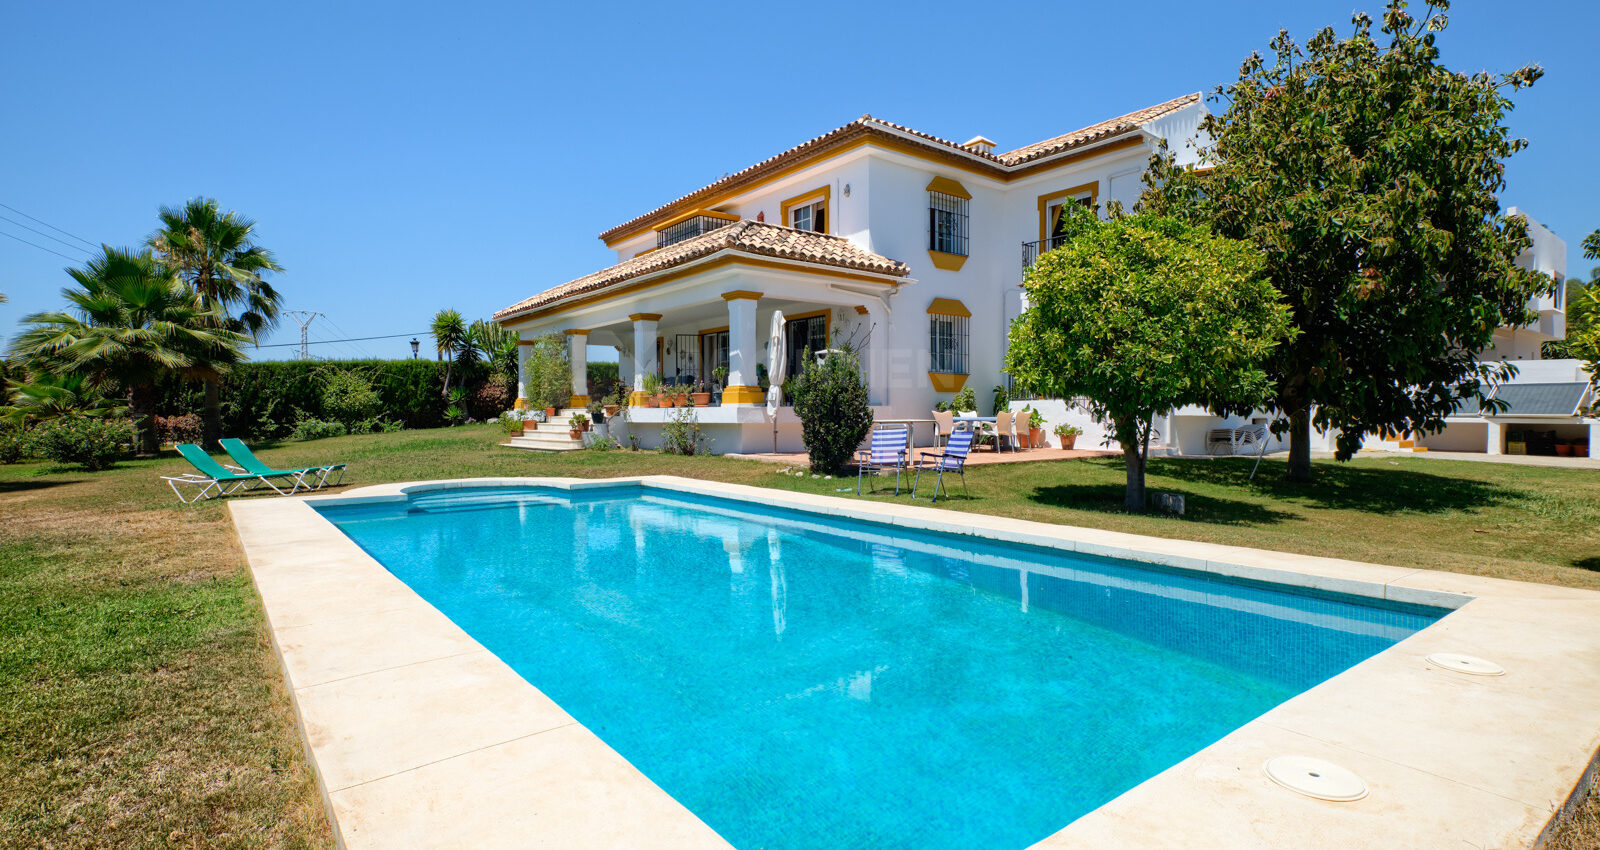 Villa im andalusischen Stil in der Nähe des Golfplatzes Guadalmina